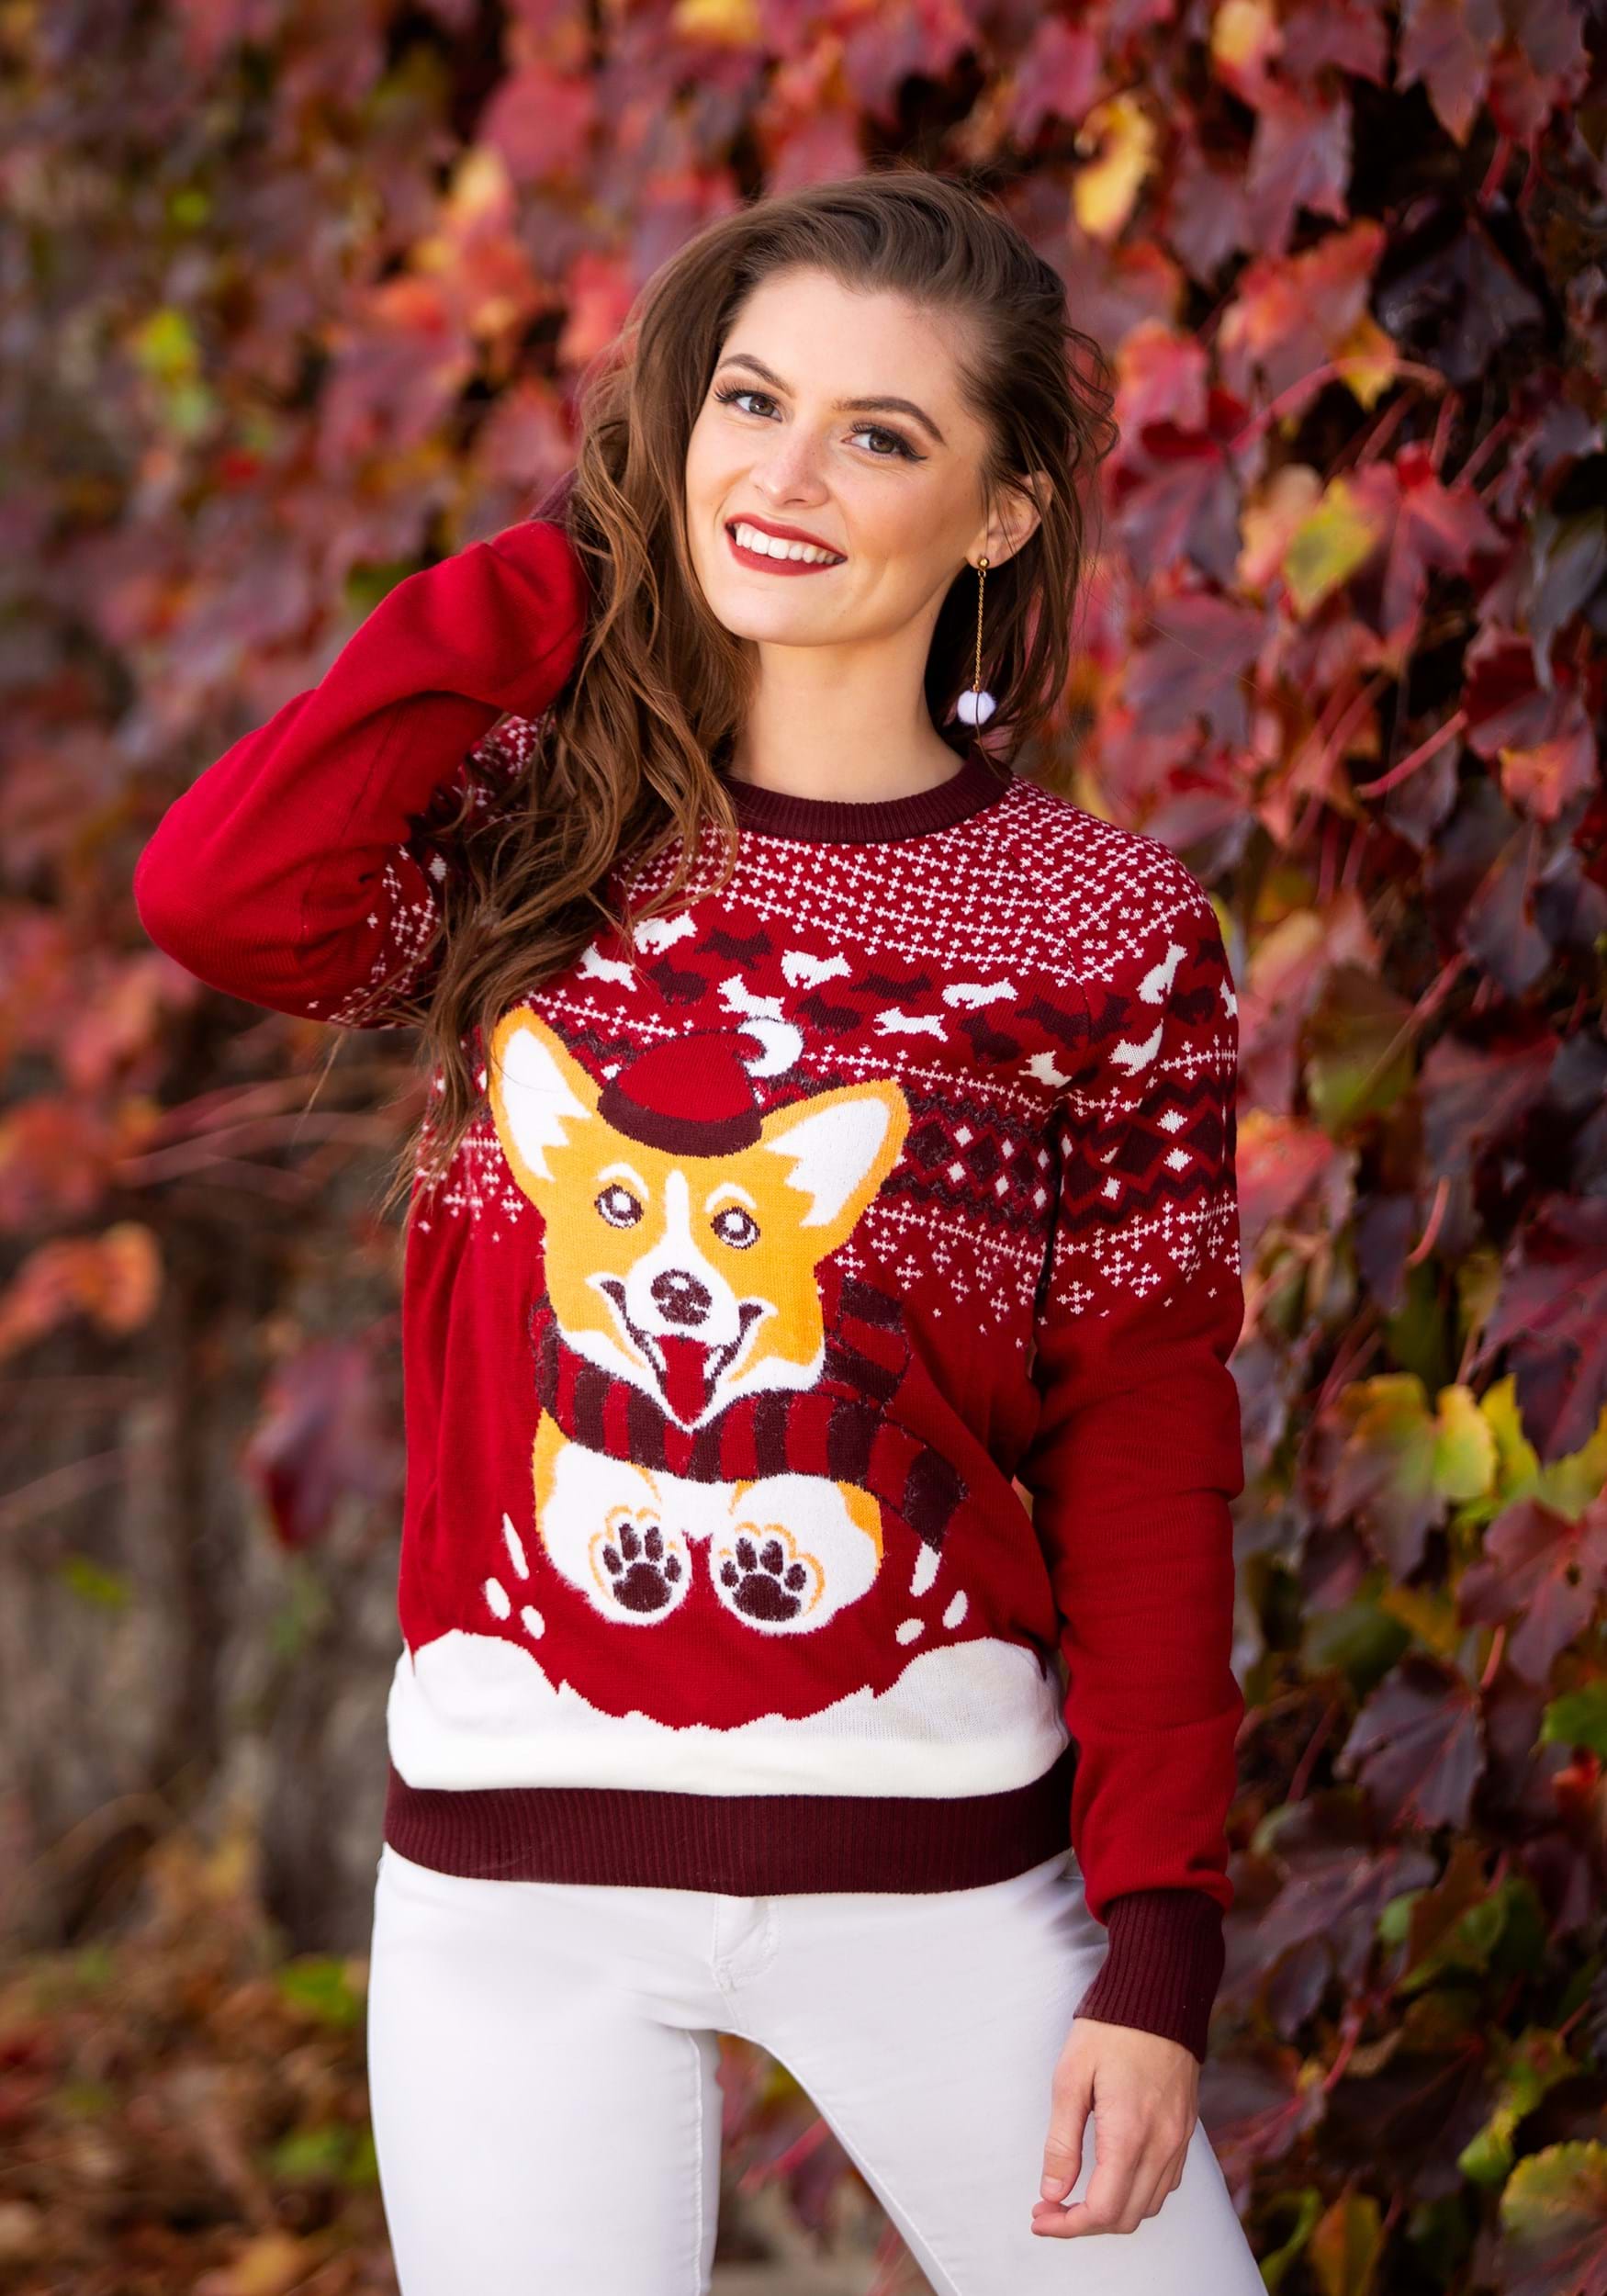 A Very Corgi Christmas Ugly Christmas Sweater for Adults